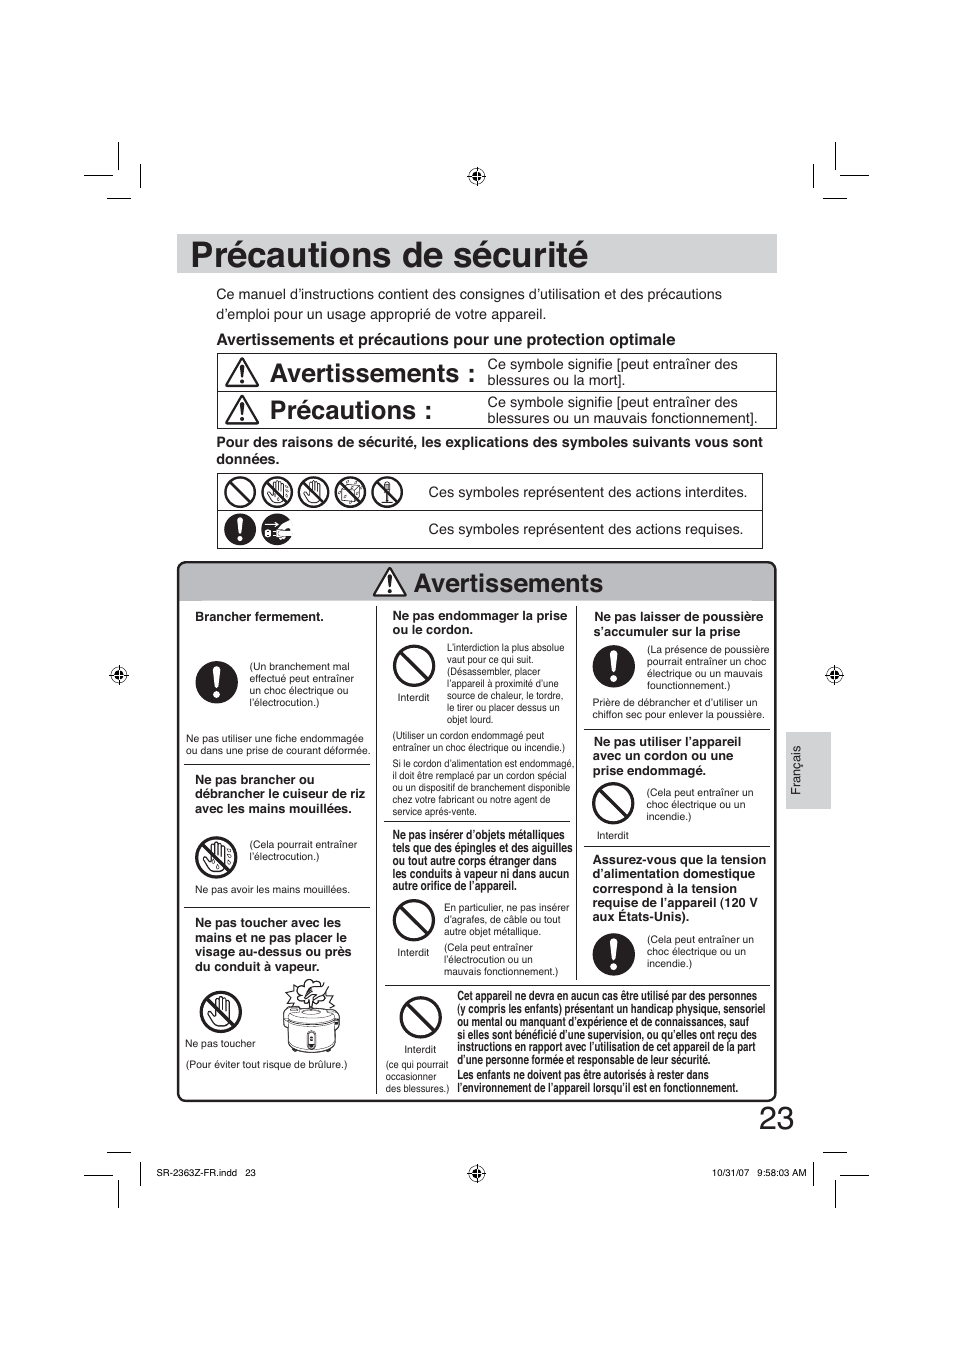 Précautions de sécurité, Avertissements, Précautions | Panasonic SR2363Z User Manual | Page 23 / 63